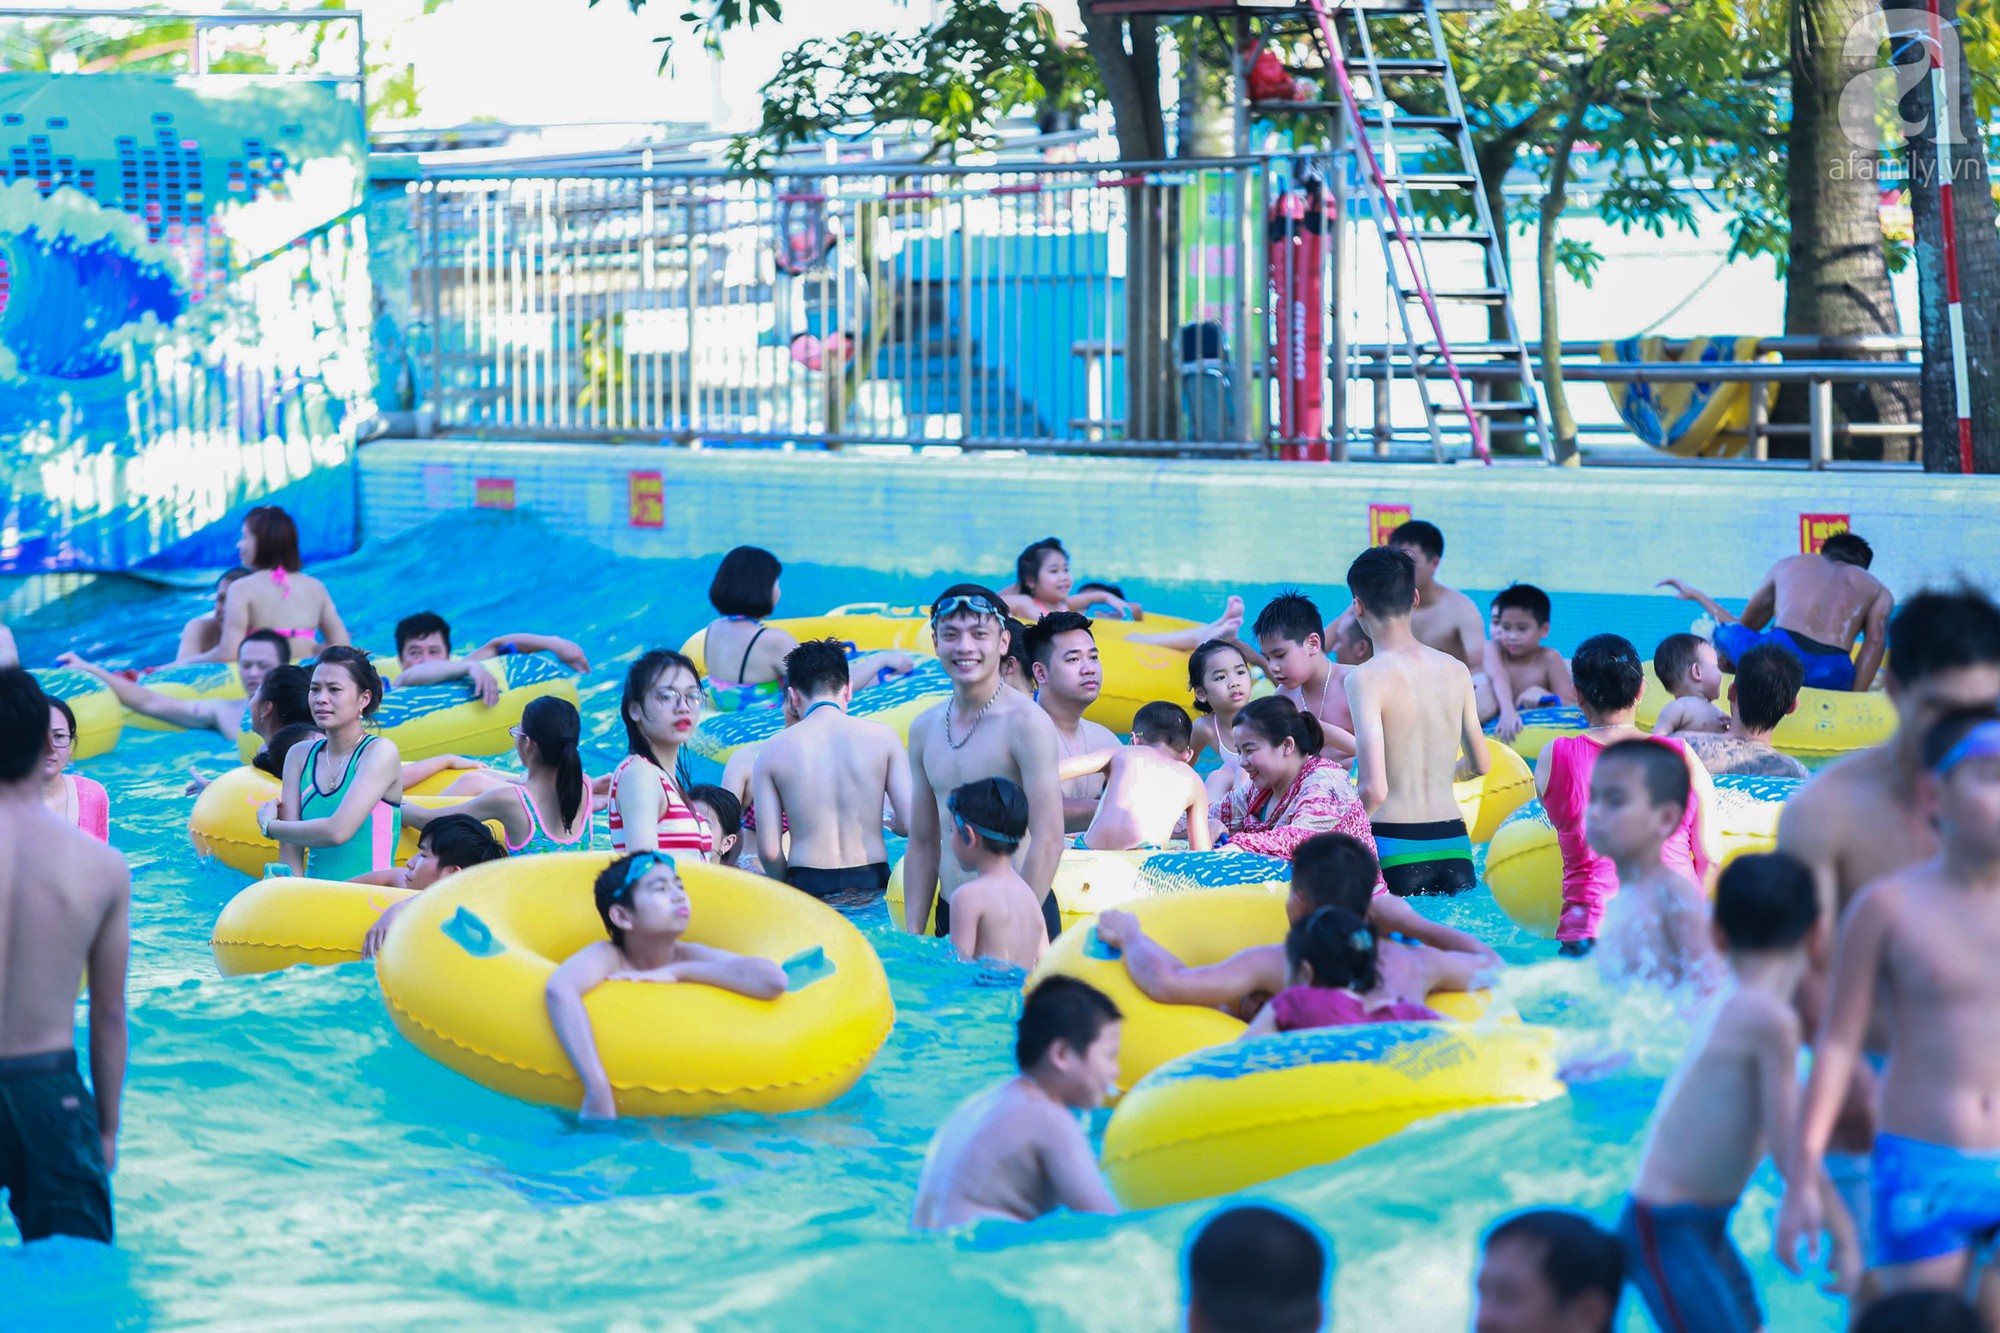 Chùm ảnh: Dân tình thỏa sức vùng vẫy giải nhiệt tại “bể bơi” lớn nhất Hà Nội - Ảnh 14.